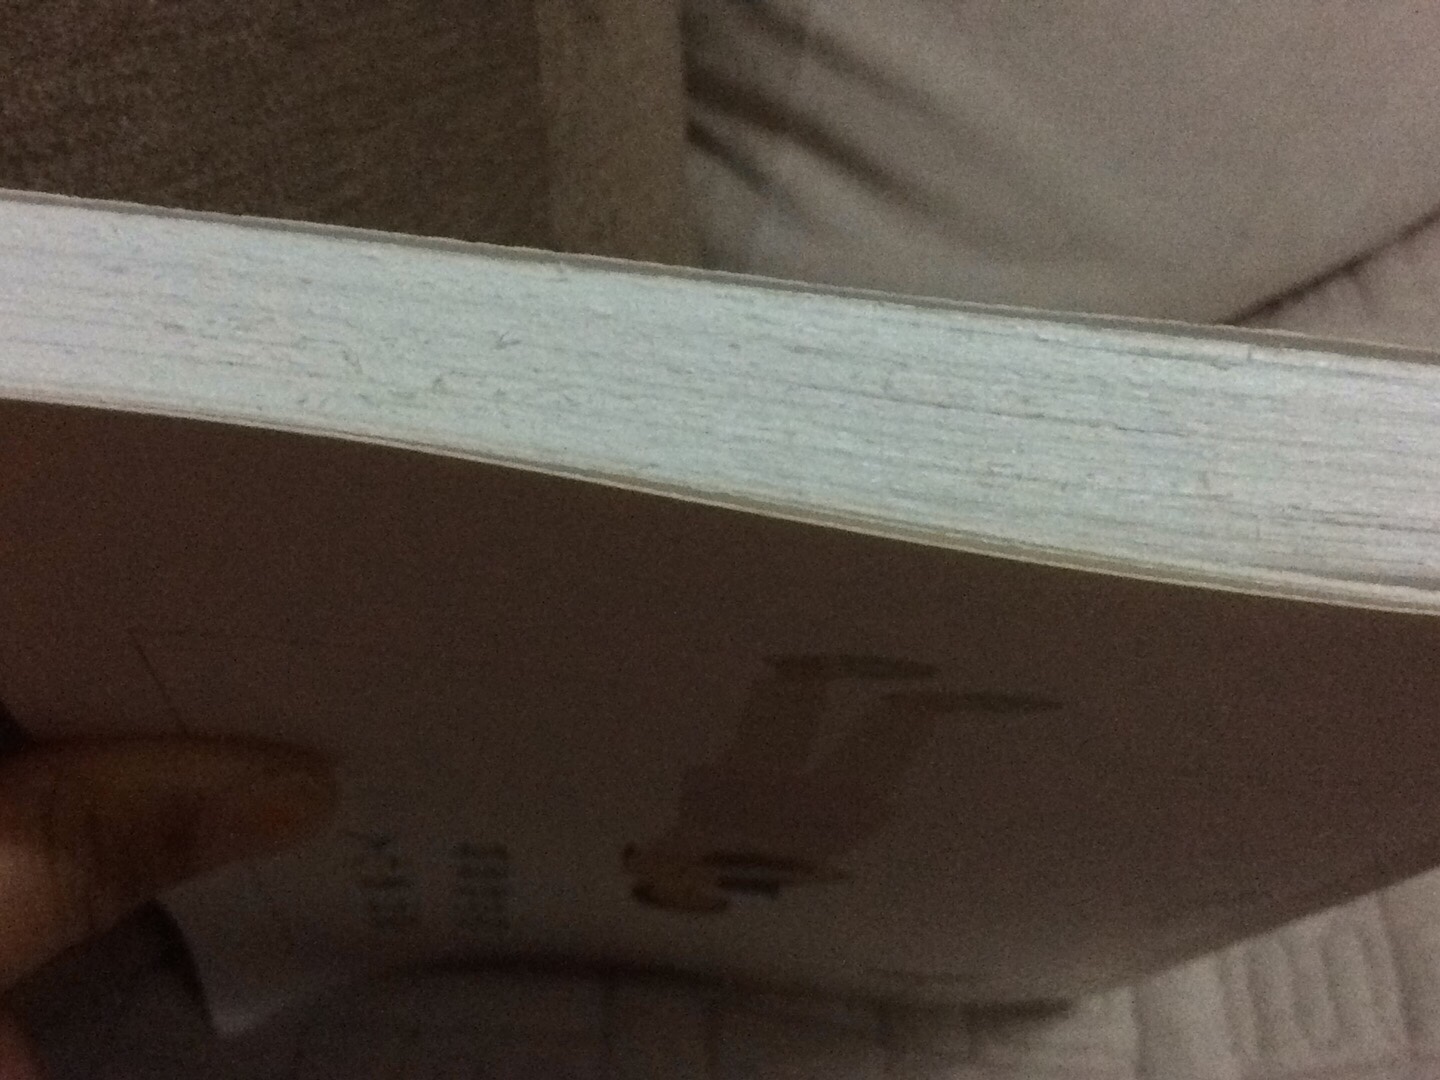 拿起书读，结果掉了一身碎纸末。仔细一看，书的底边像是用锯切的，买这么多年书第一次见，惊到了！！！